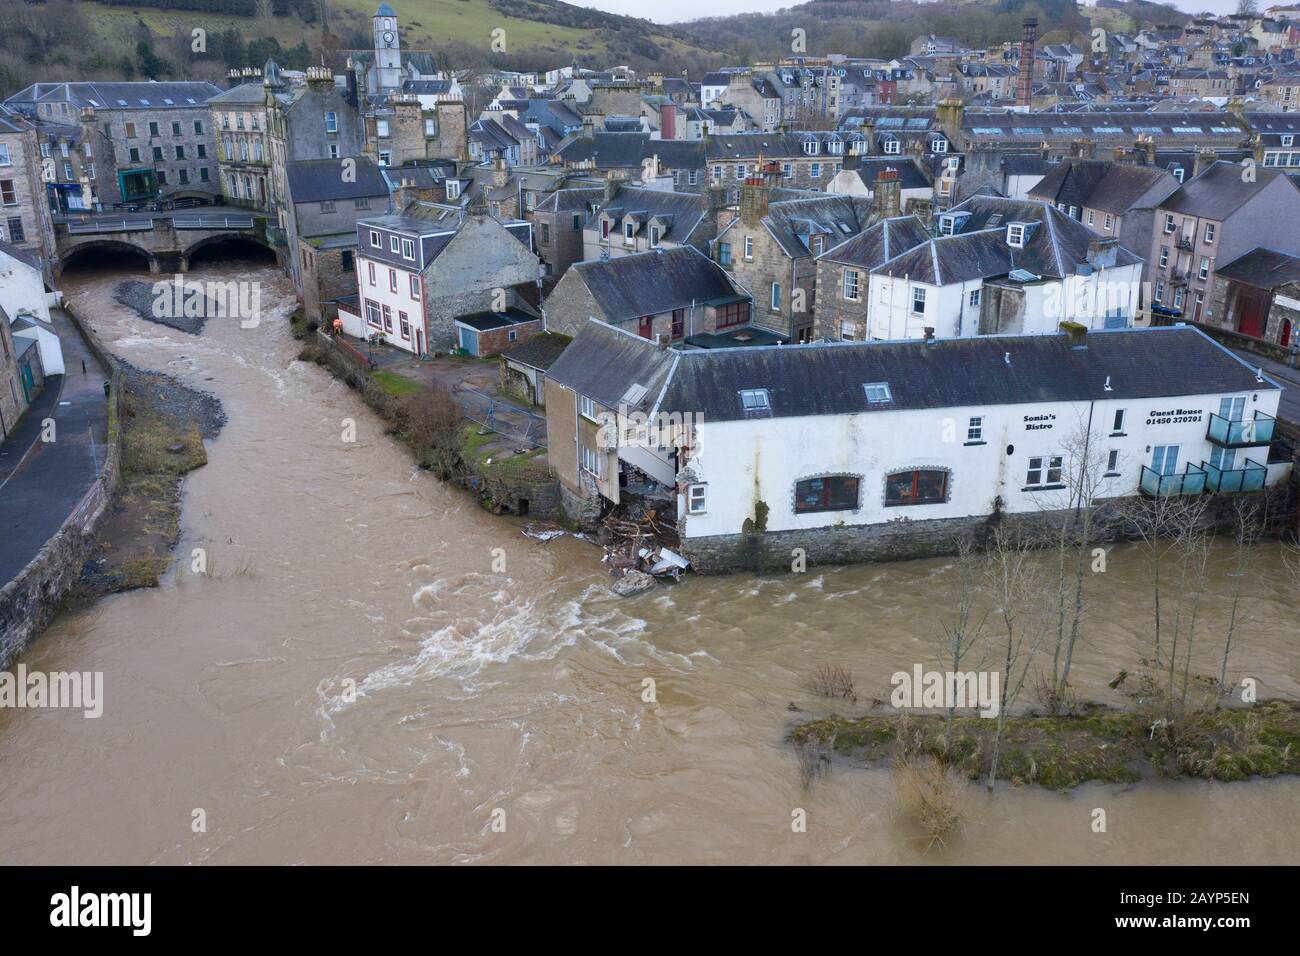 16 Février 2020. Niveaux d'eau élevés après la tempête Dennis dans la rivière Slitrig (l) et la rivière Teviot à Hawick aux frontières écossaises, Écosse, Royaume-Uni Banque D'Images